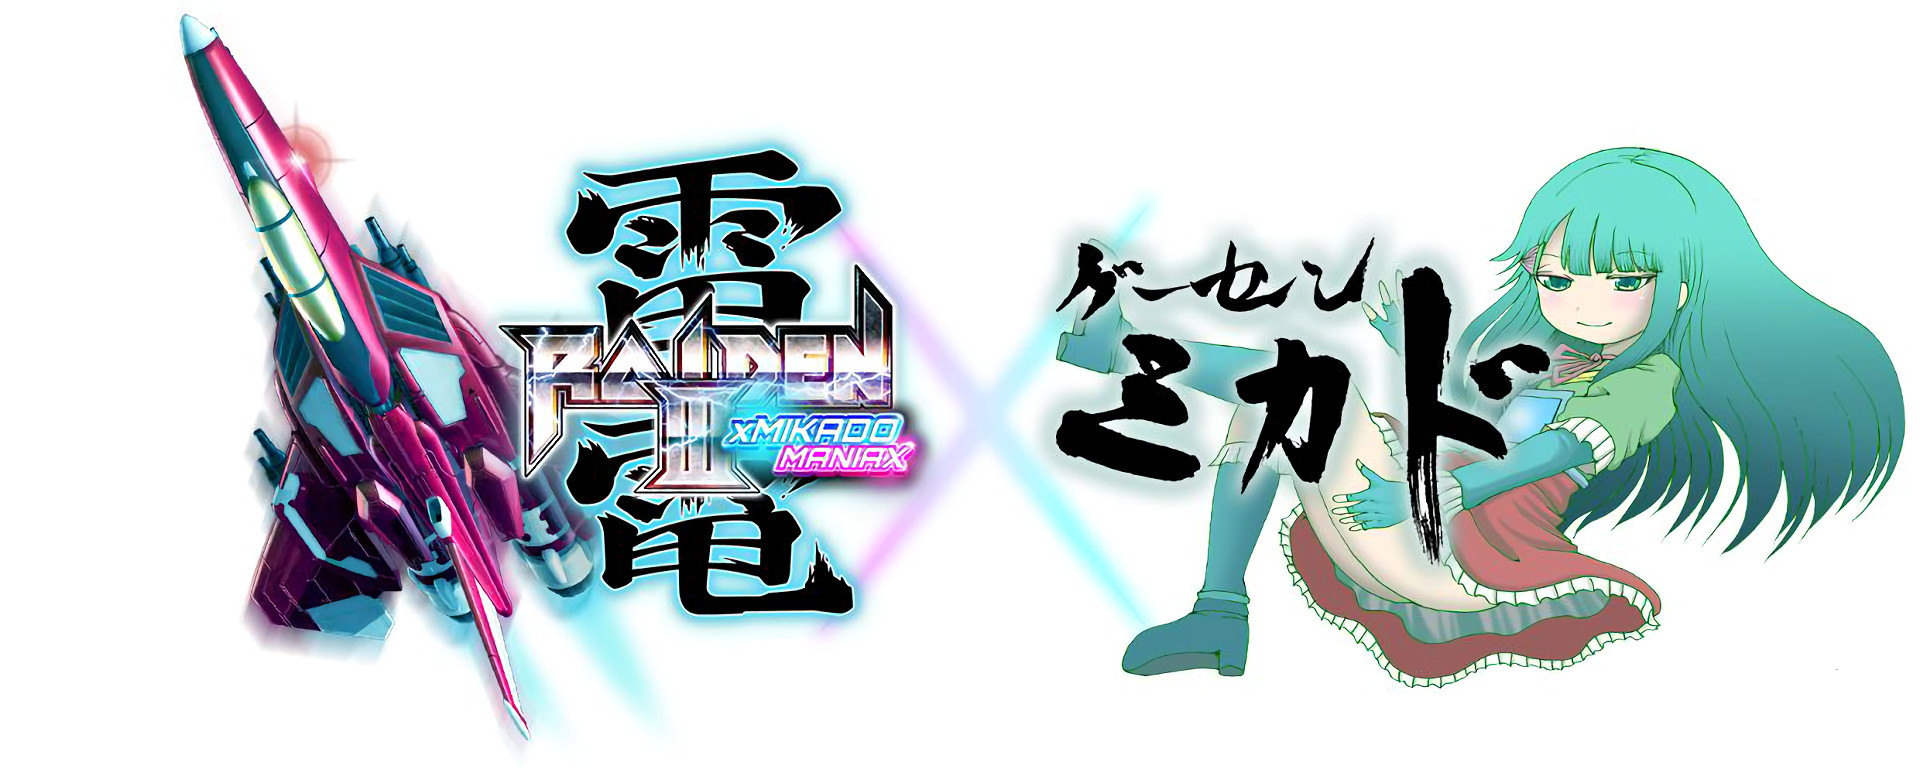 雷電III / IV》傳奇遊樂場MIKADO 特別合作版2/23 推出追加全新混音版 